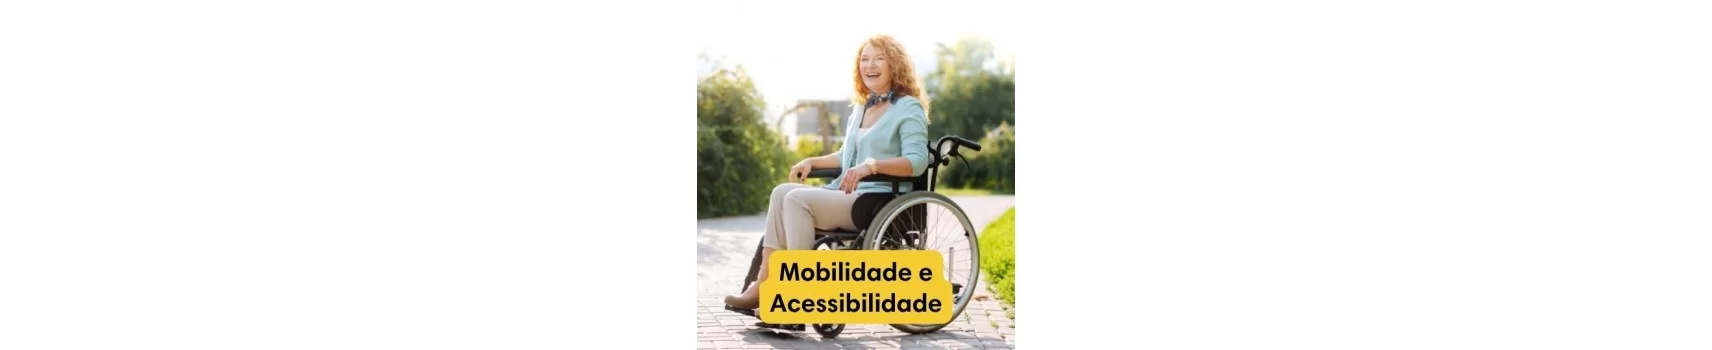 Mobilidade e Acessibilidade | Viver Melhor® | Comprar aqui